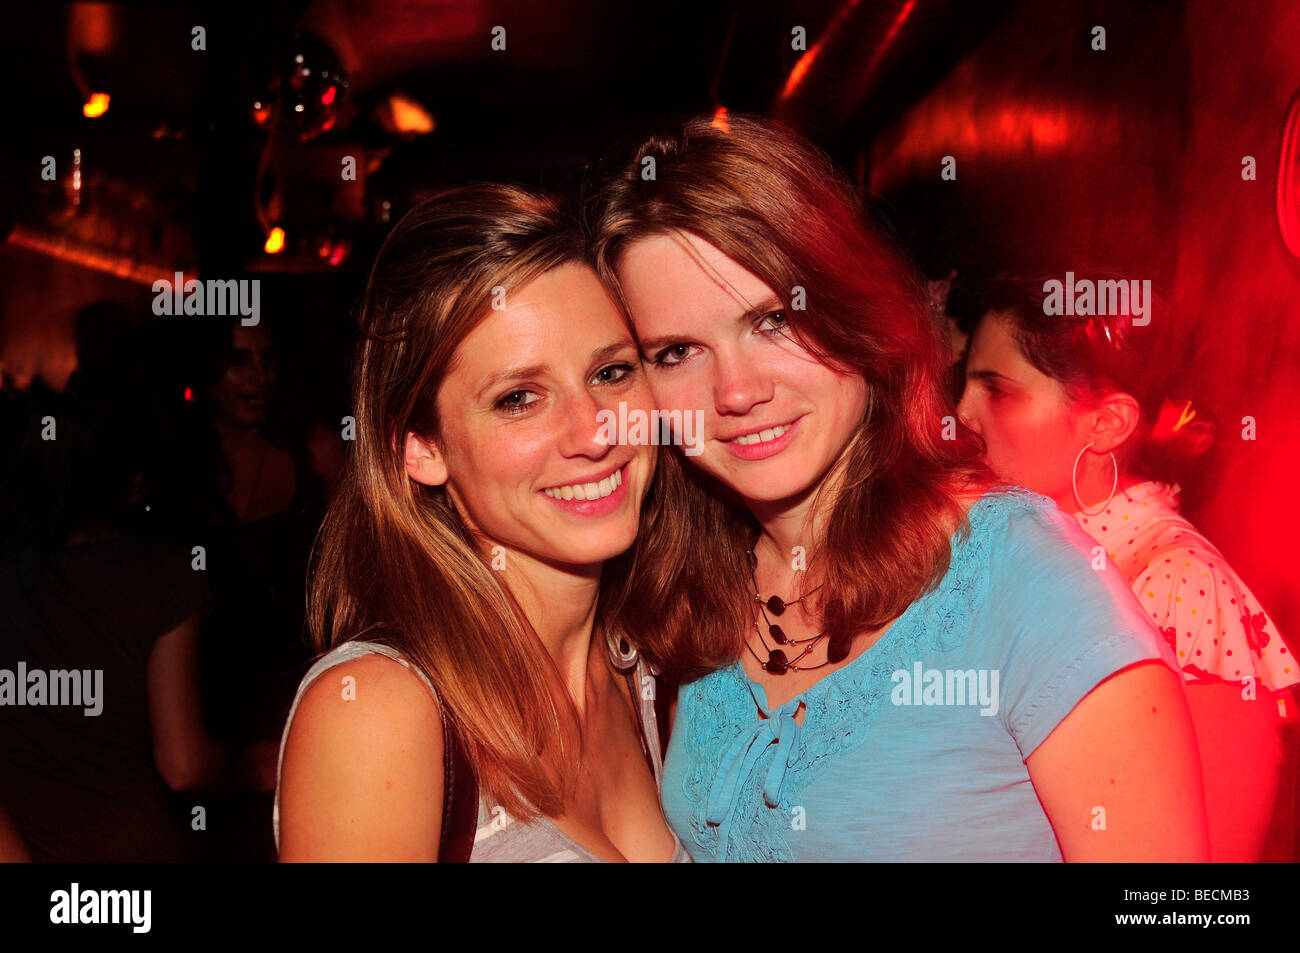 Deux jeunes femmes dans un club de nuit, sortir, Madrid, Espagne, Péninsule ibérique, Europe Banque D'Images